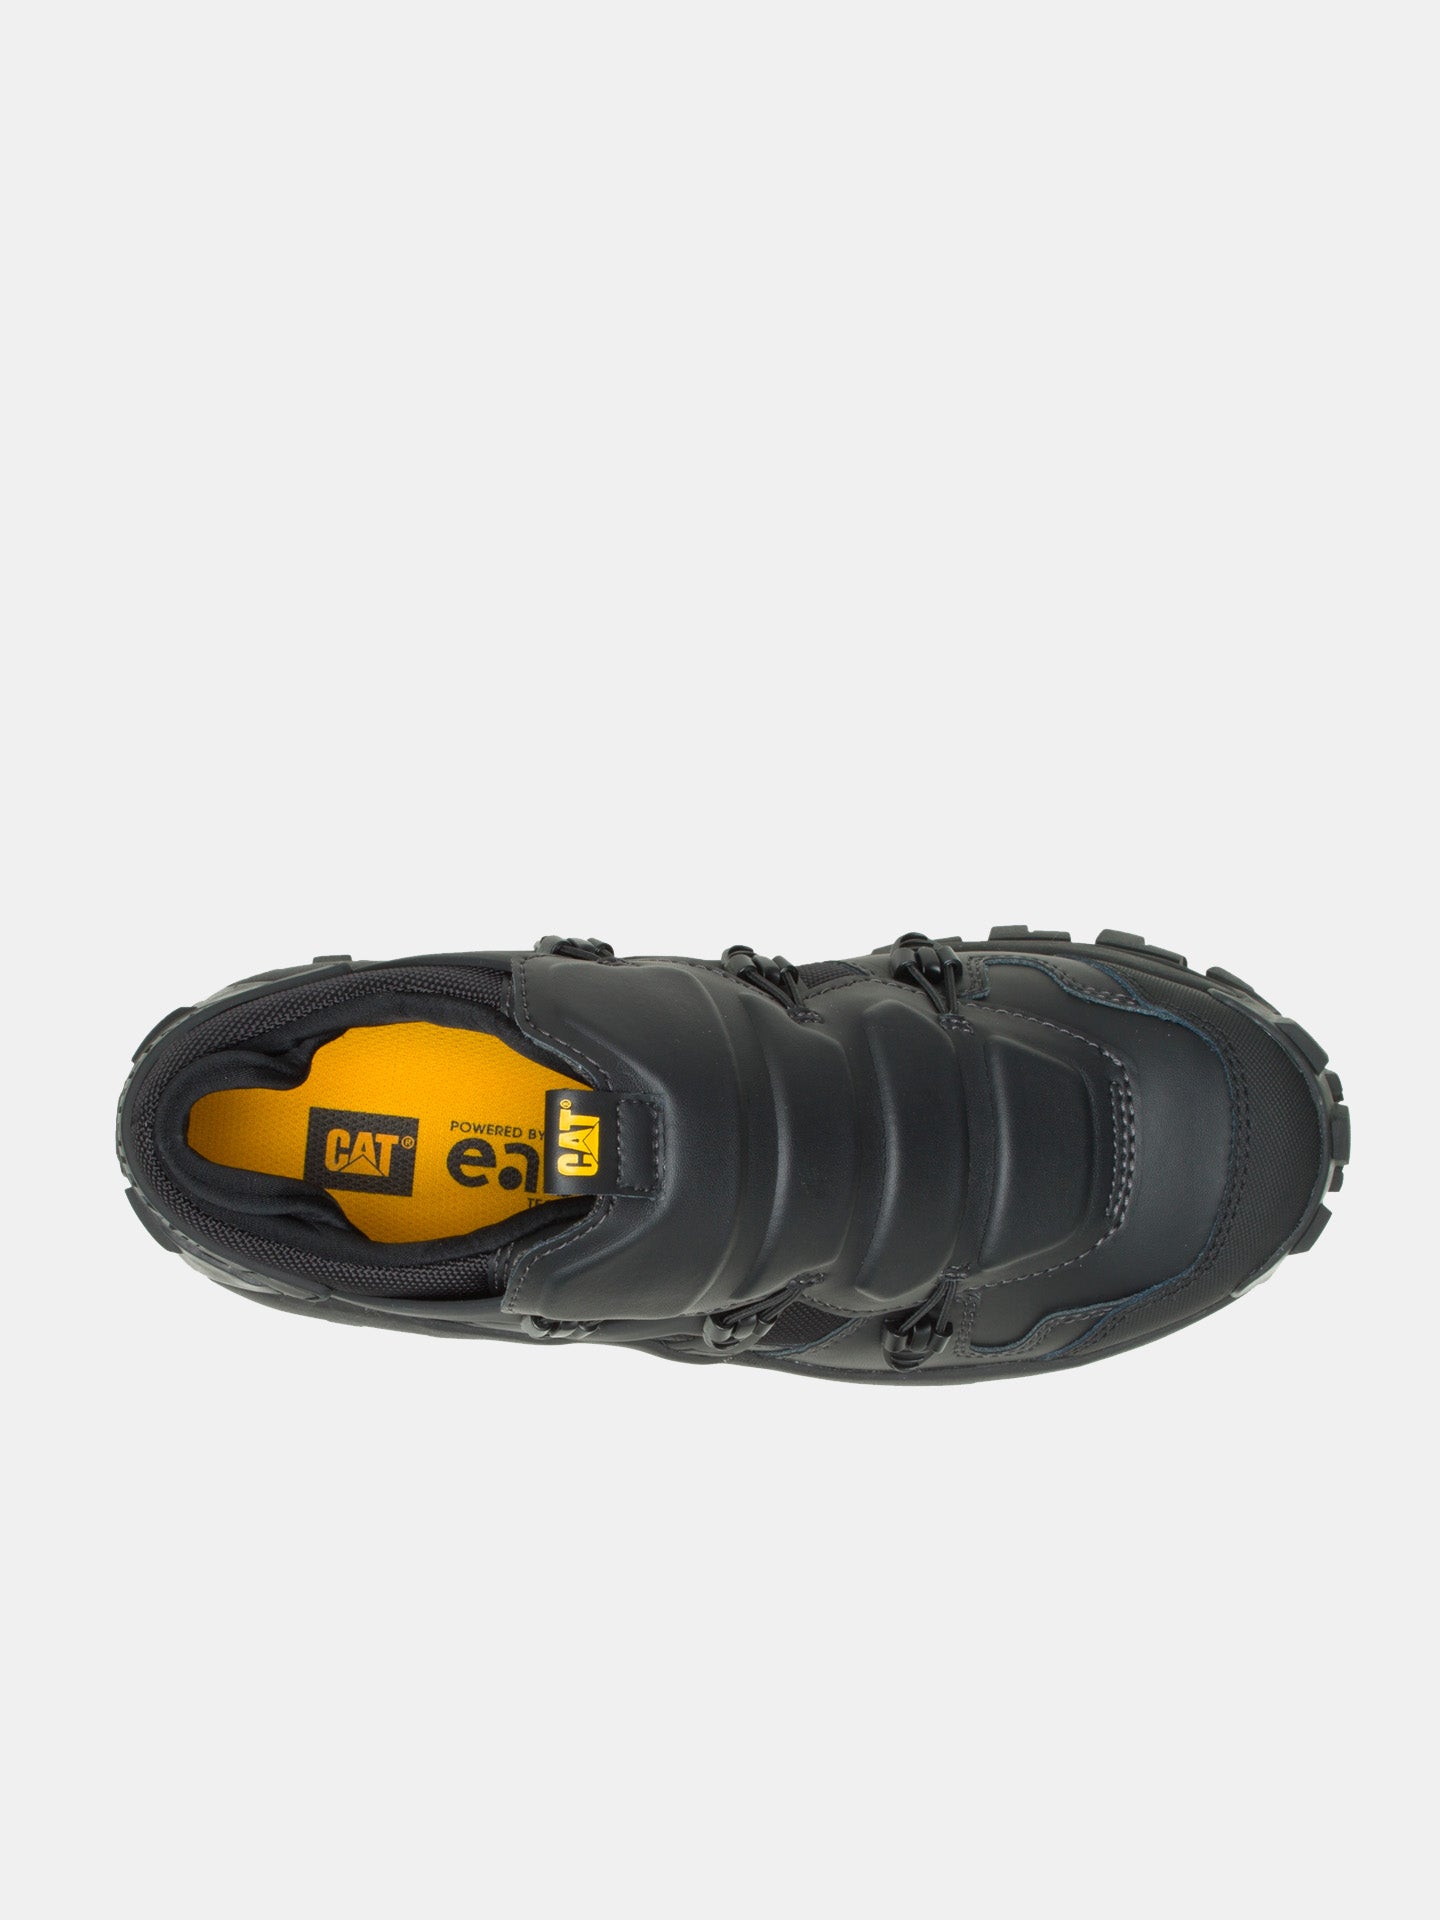 Caterpillar Men's Invader Met Steel Toe Work Shoe Shoes